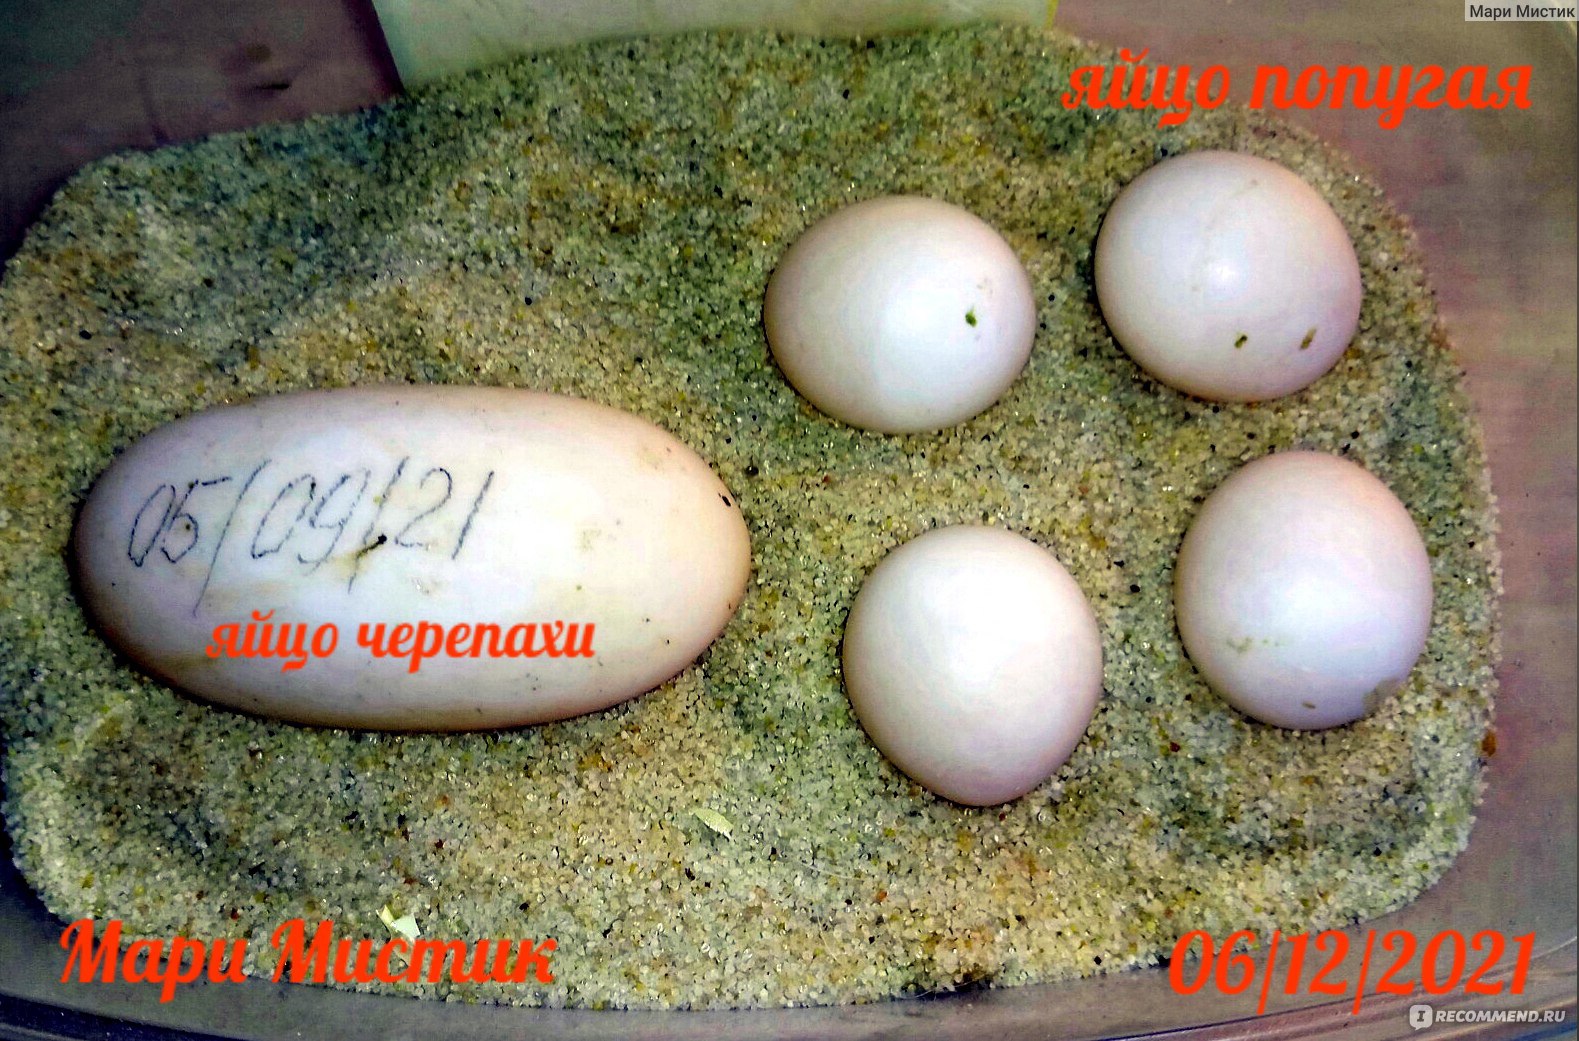 Овоскопирование яиц попугая